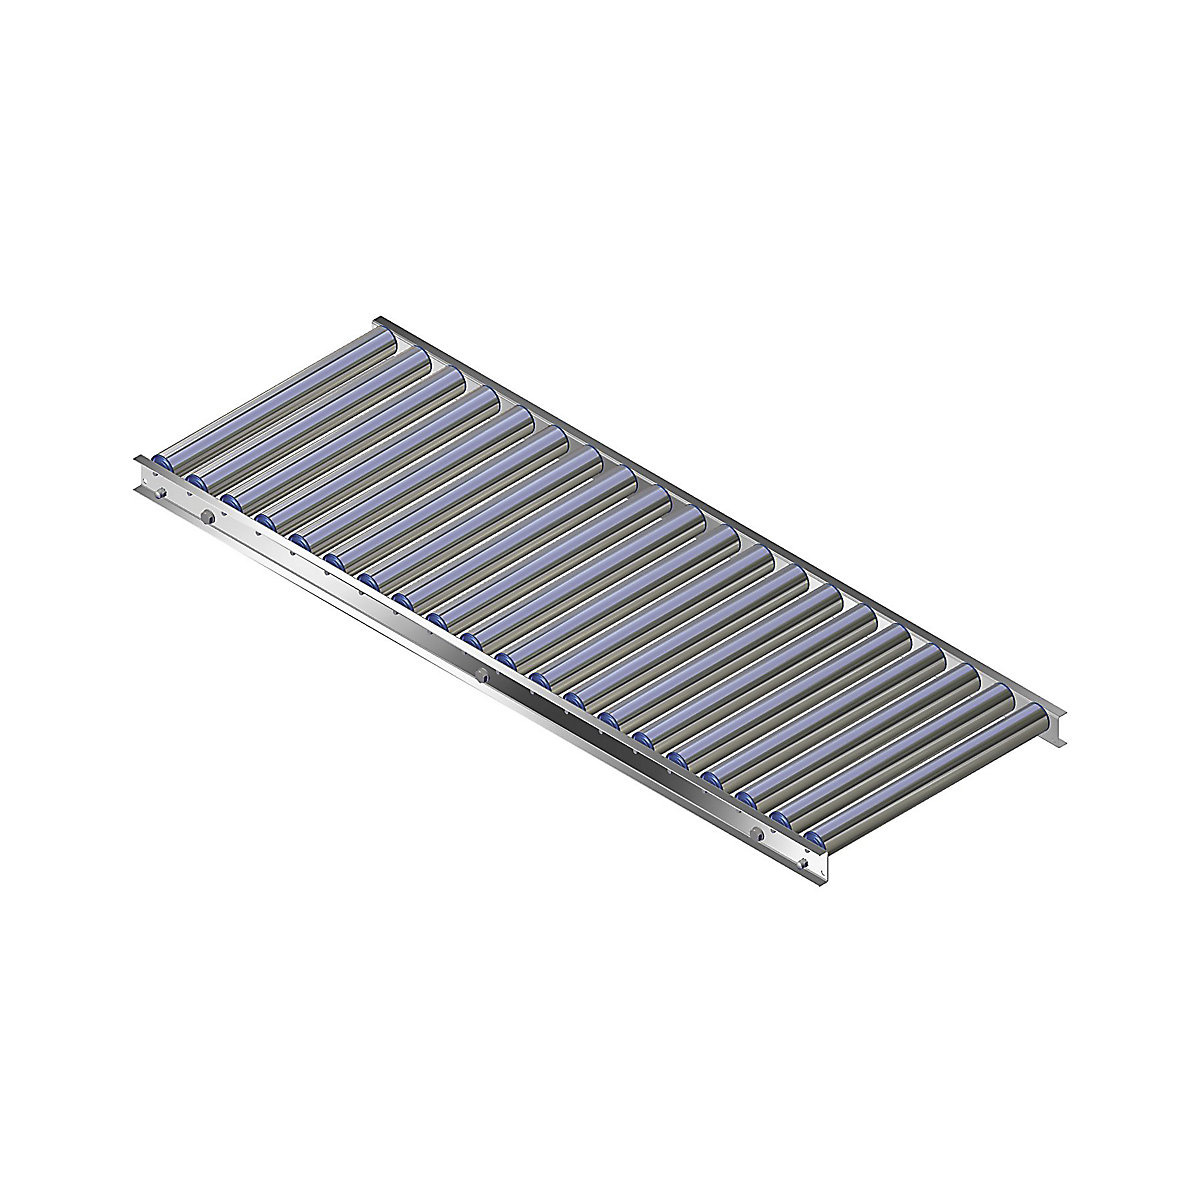 Könnyű görgős pálya, alumíniumkeret alumínium görgőkkel – Gura, pályaszélesség 500 mm, tengelytávolság 75 mm, hossz 1,5 m-11